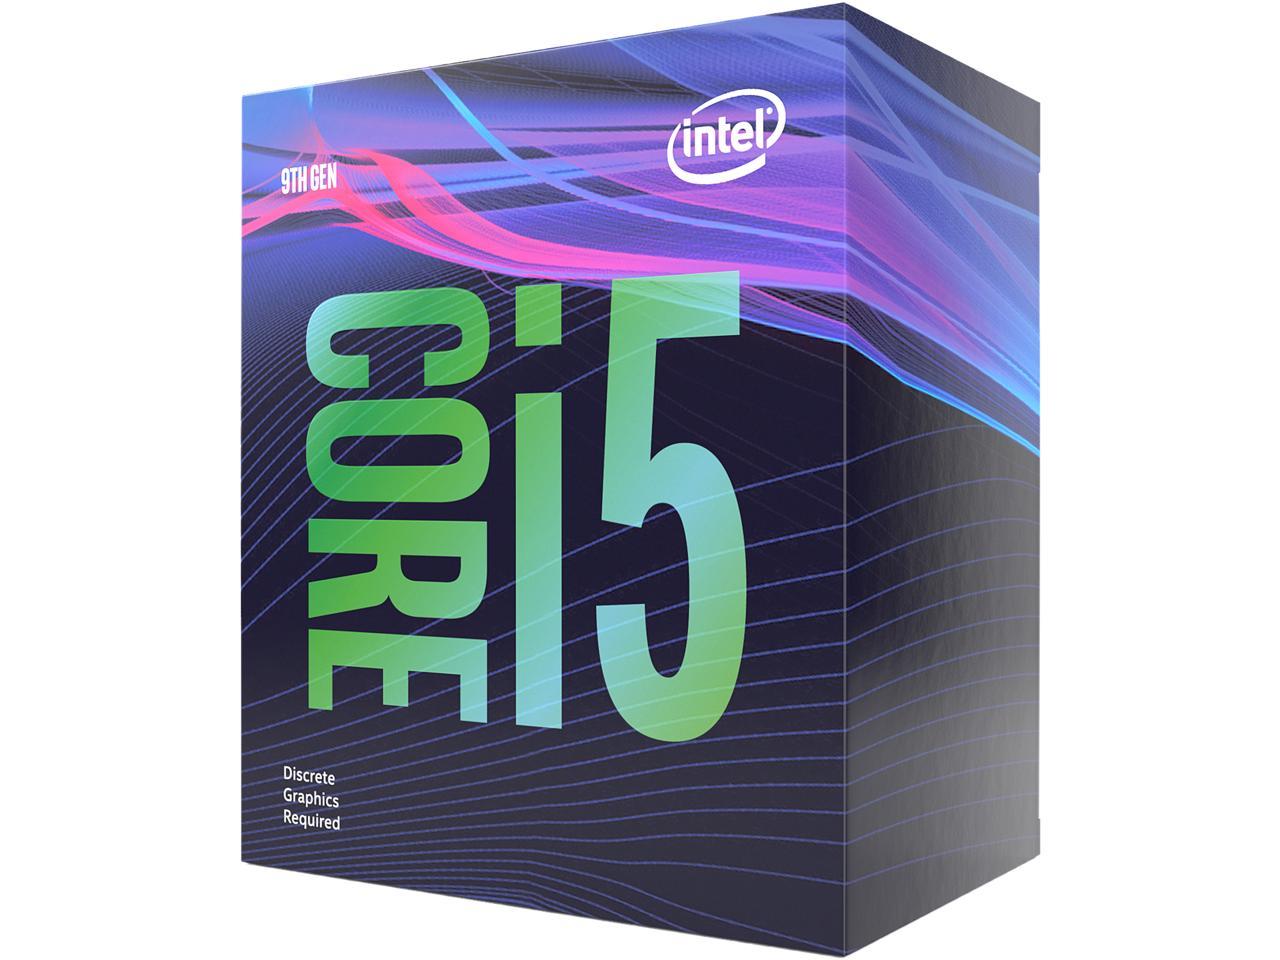 Intel Core i5-9400F 9th Gen Desktop Processor BX80684I59400F - US